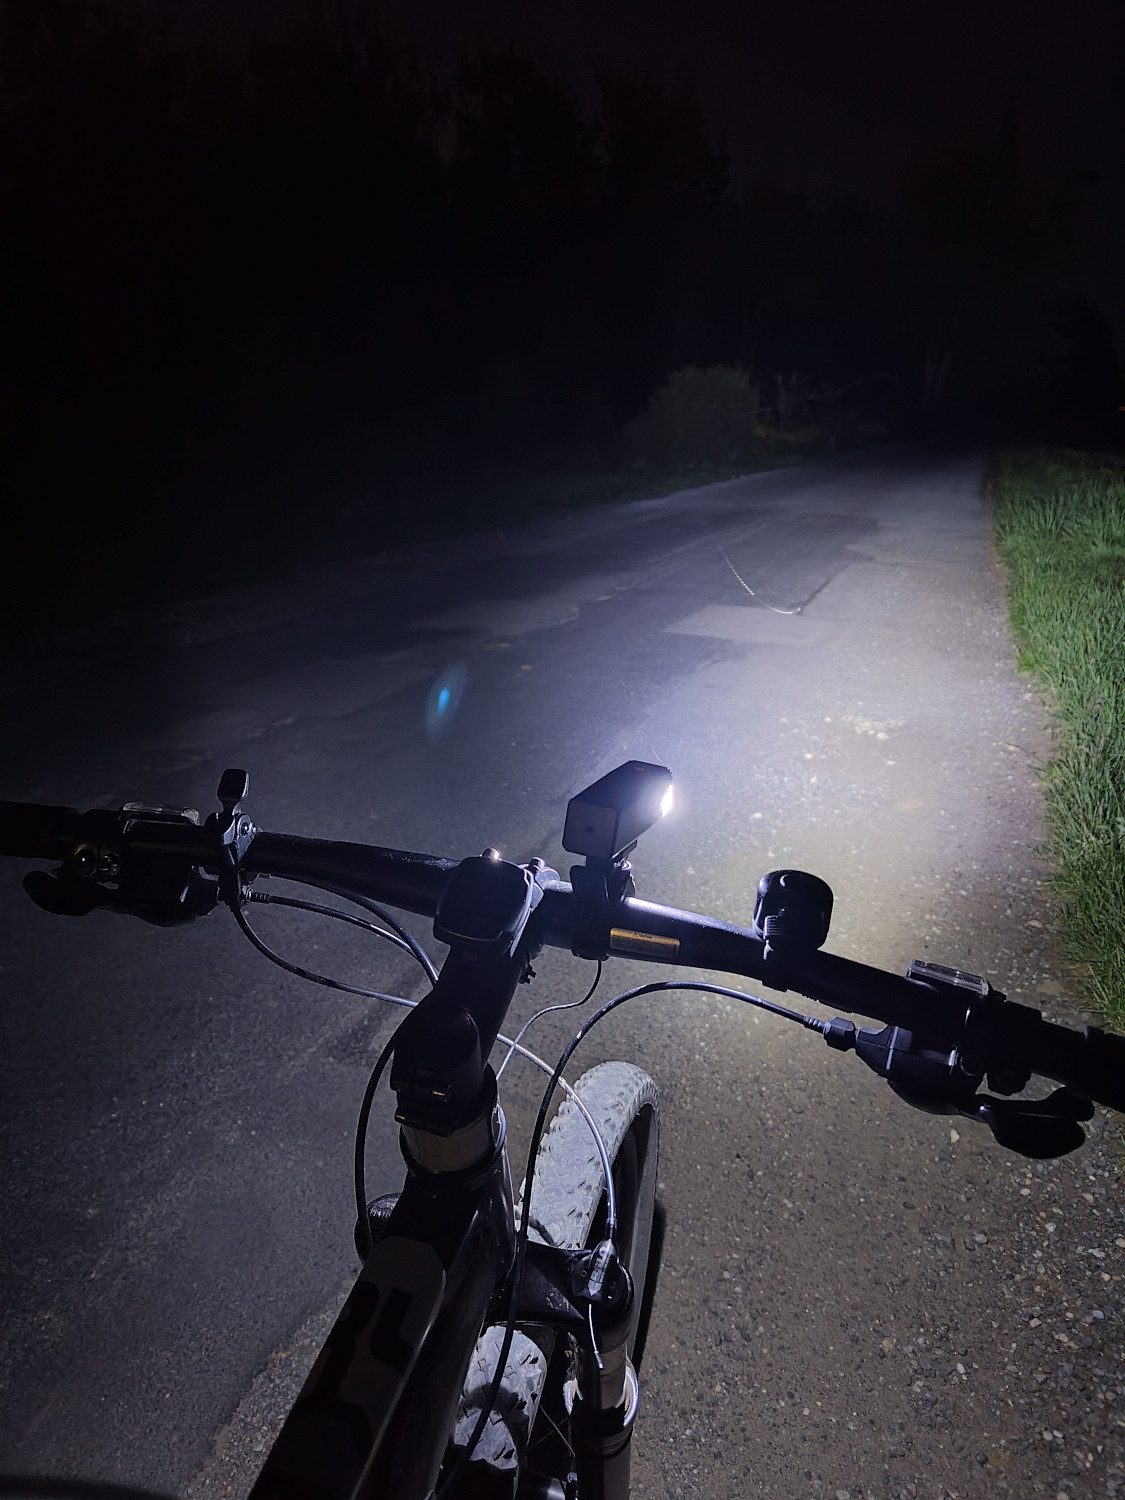 asus-zenfone9-zdjecie-nocne-rower